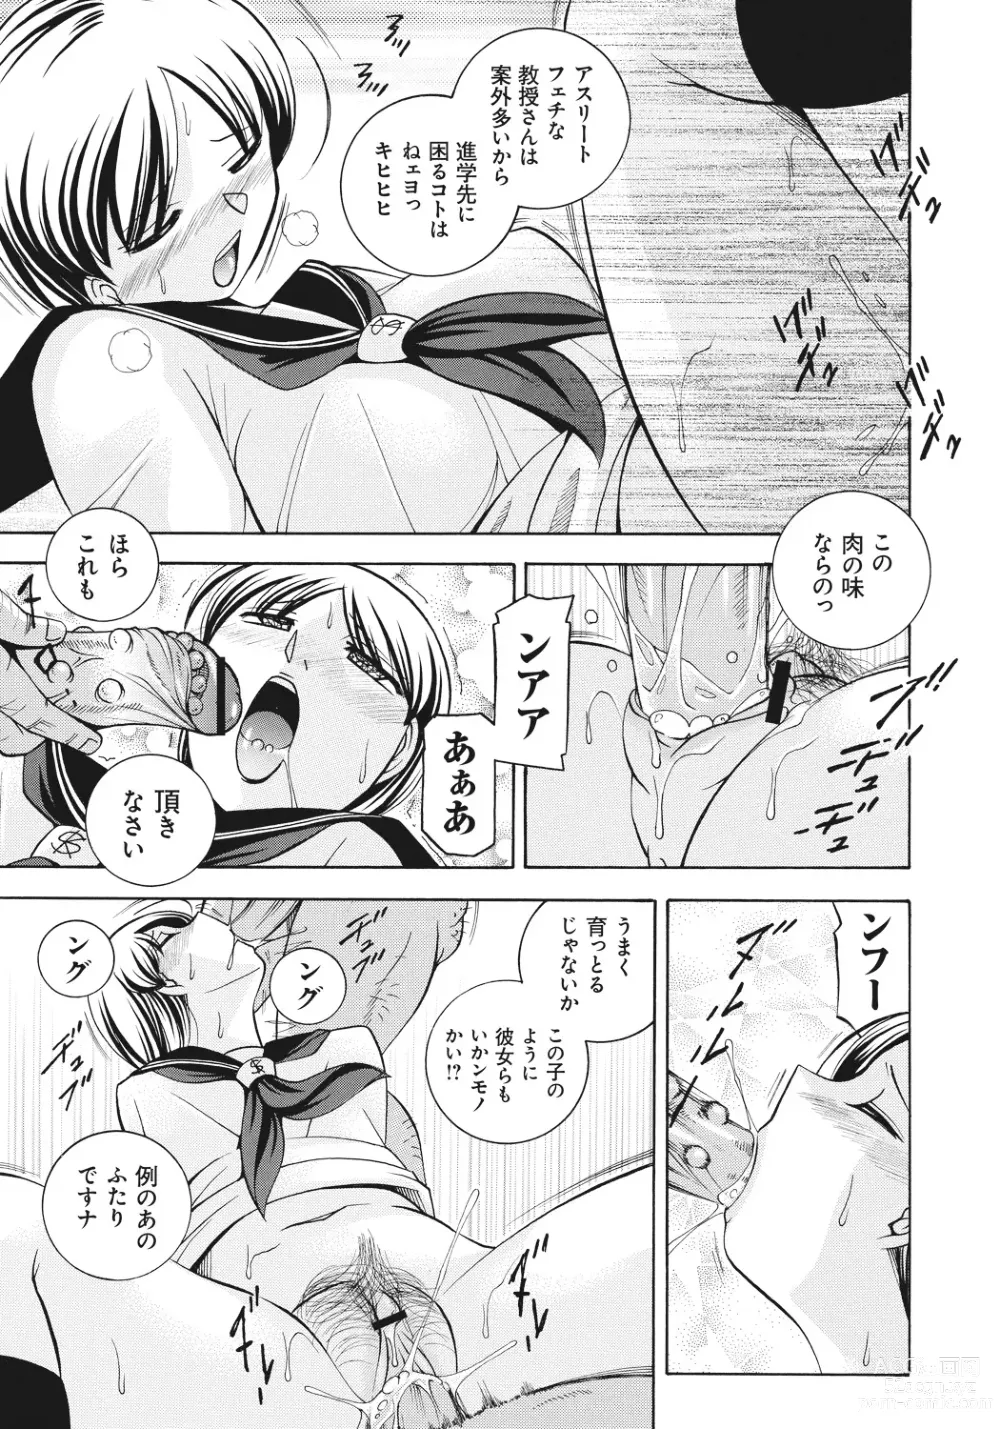 Page 6 of manga Student Council President Mitsuki